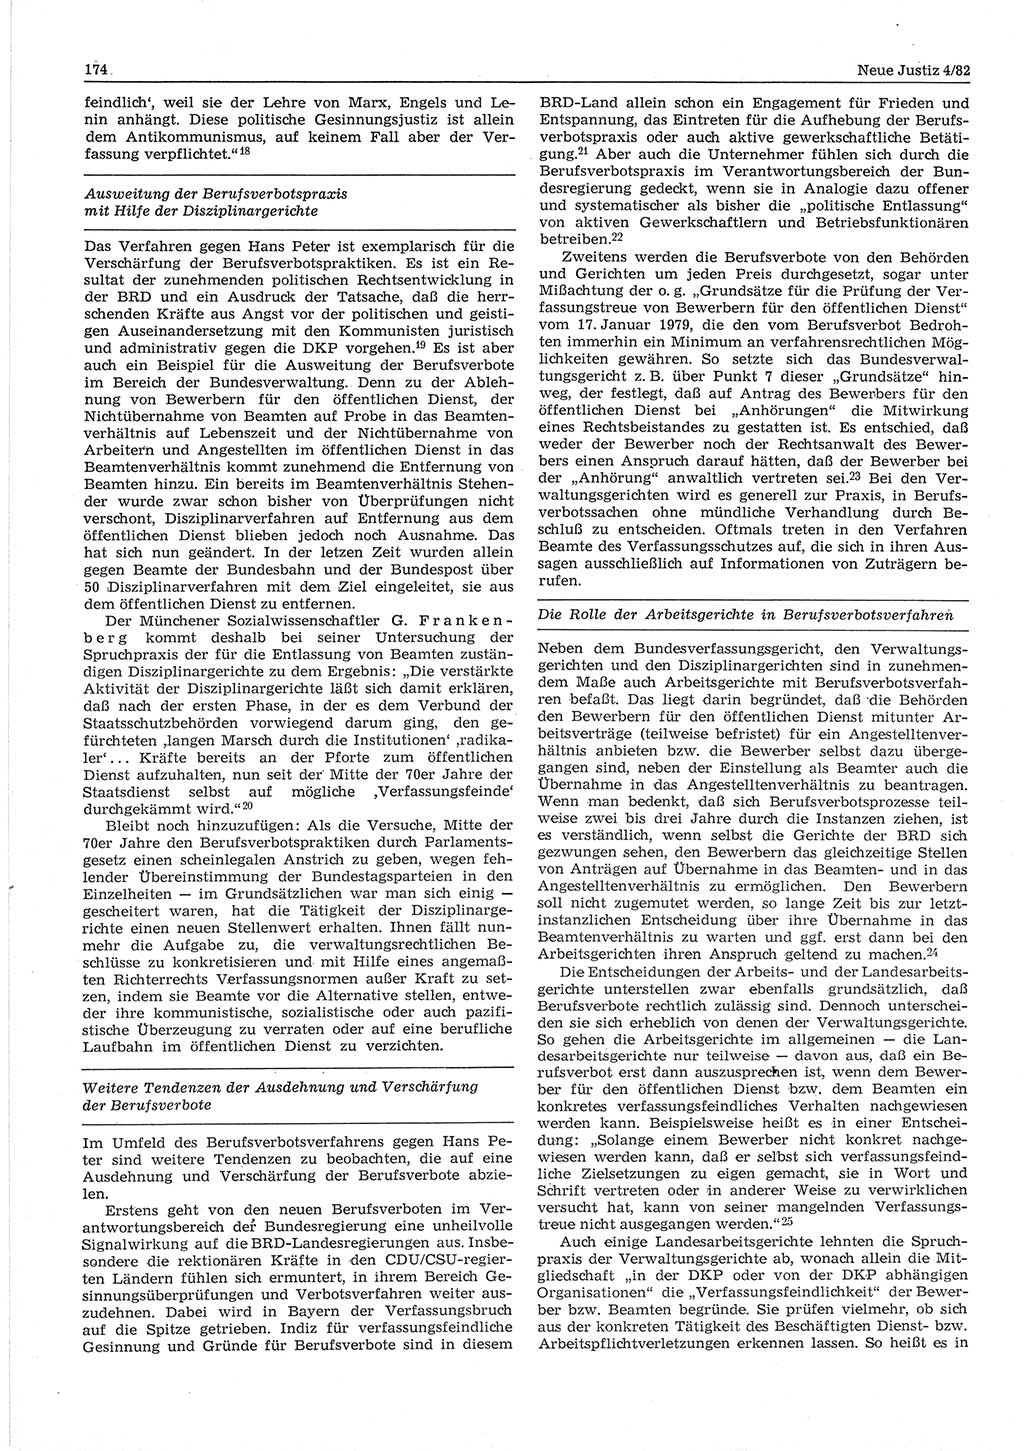 Neue Justiz (NJ), Zeitschrift für sozialistisches Recht und Gesetzlichkeit [Deutsche Demokratische Republik (DDR)], 36. Jahrgang 1982, Seite 174 (NJ DDR 1982, S. 174)